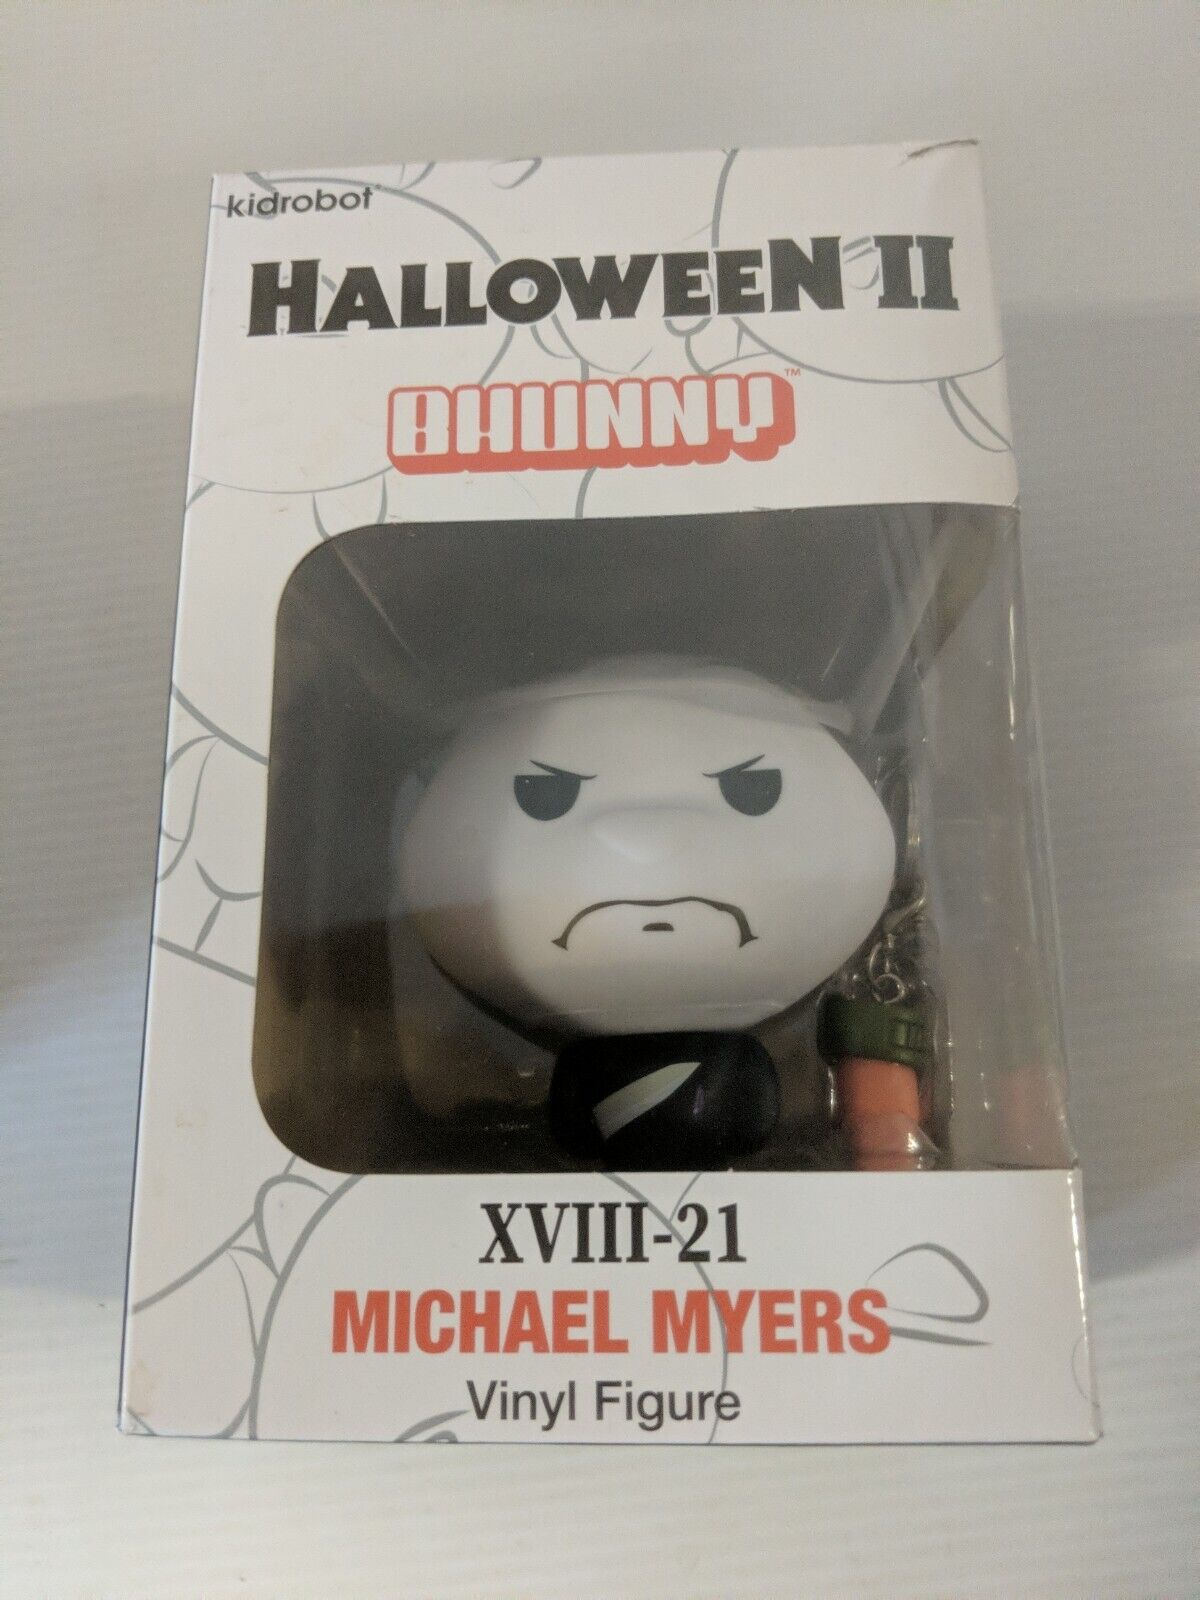 Kidrobot Halloween II: Michael Myers, BHUNNY XVIII-21  Vinyl Figure.